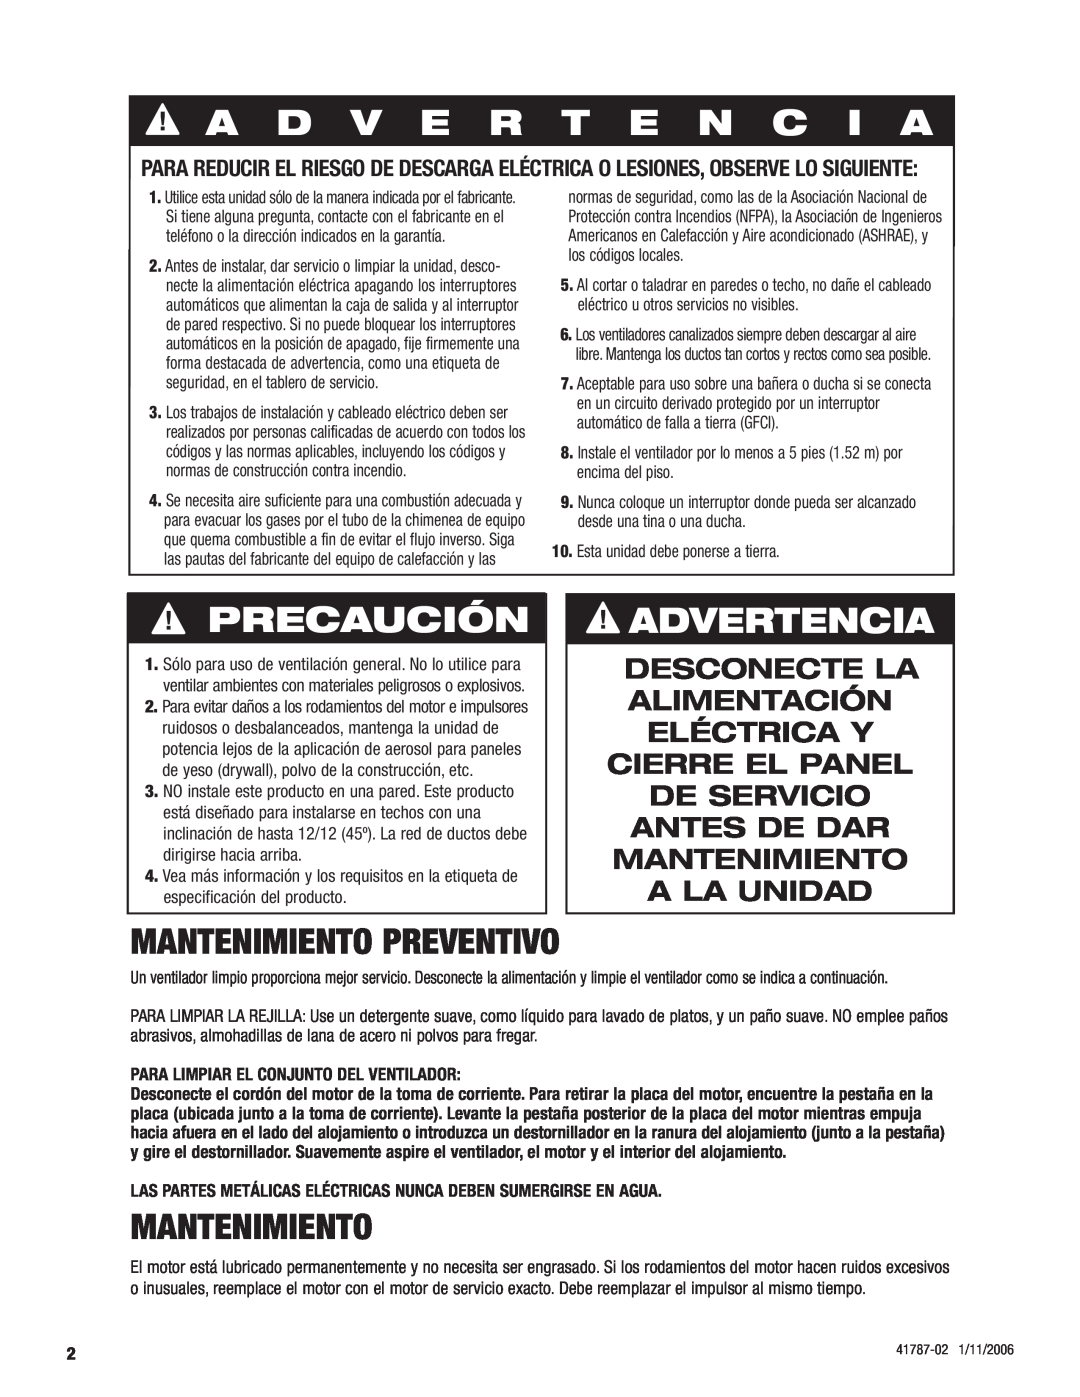 Hunter Fan 81004 manual A D V E R T E N C I A, Precaución, Advertencia, Mantenimiento preventivo 